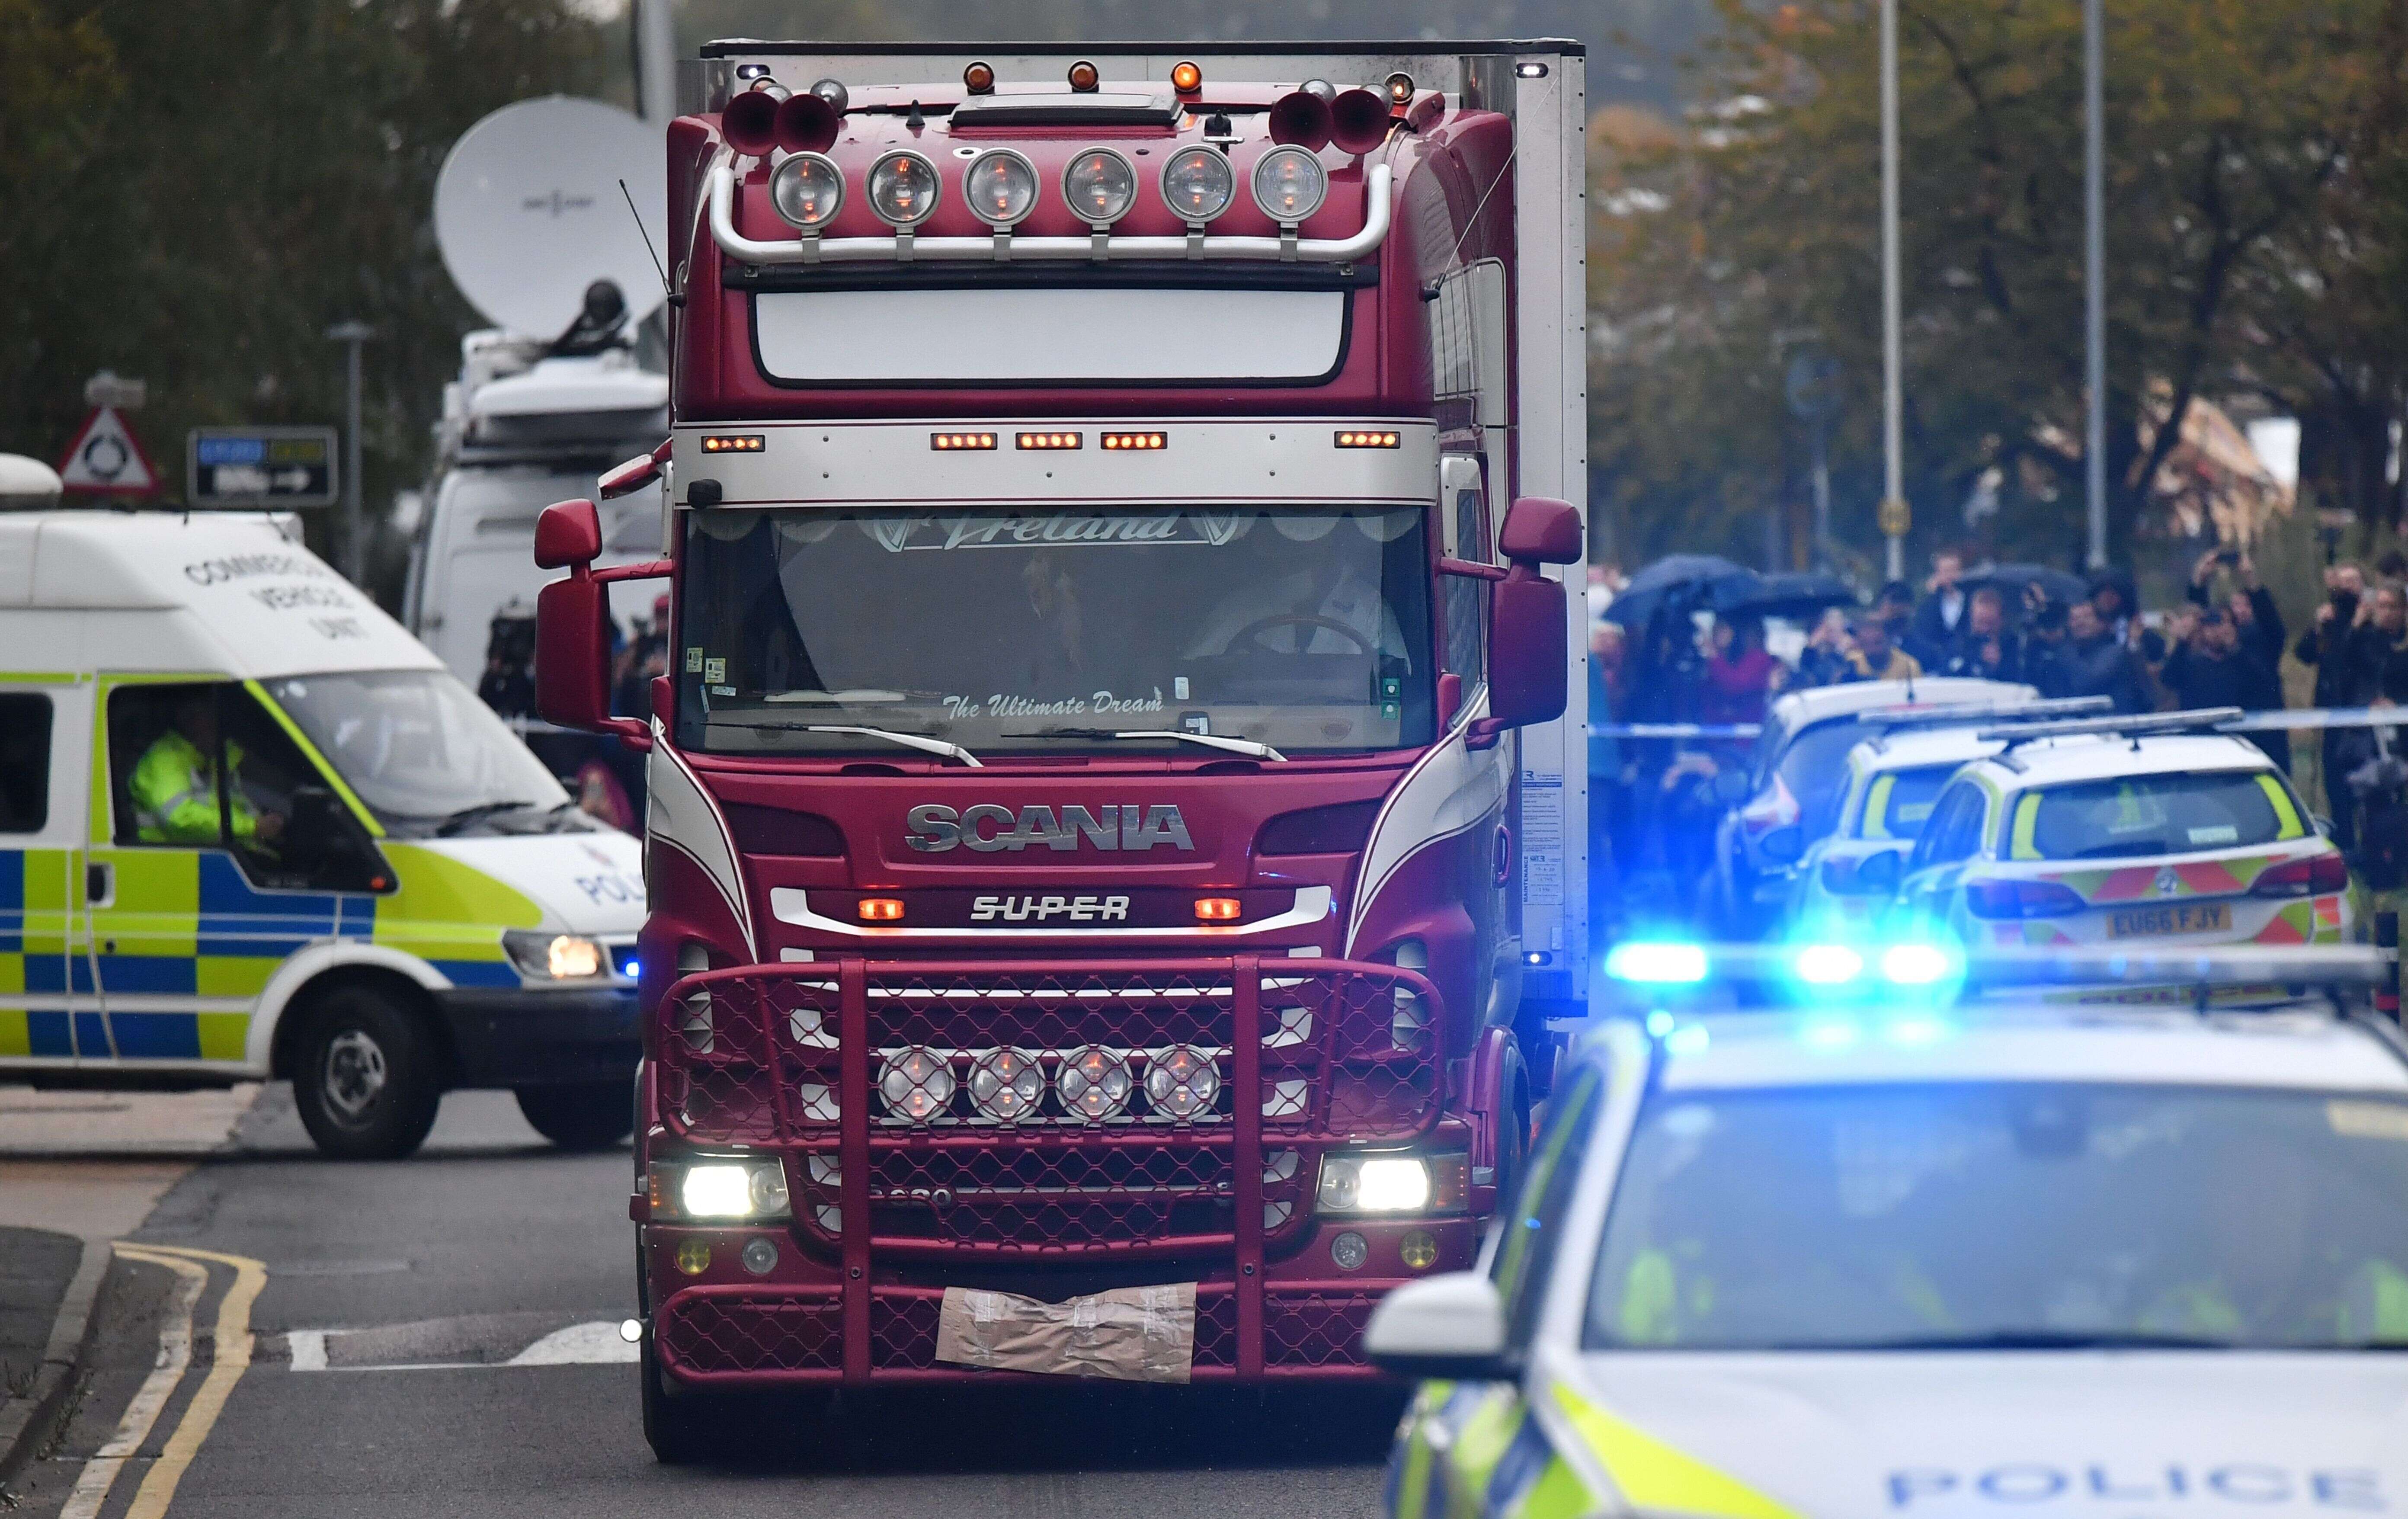 Les 39 morts retrouvés dans un camion (photographié ici le 23 octobre) au Royaume-Uni étaient Chinois